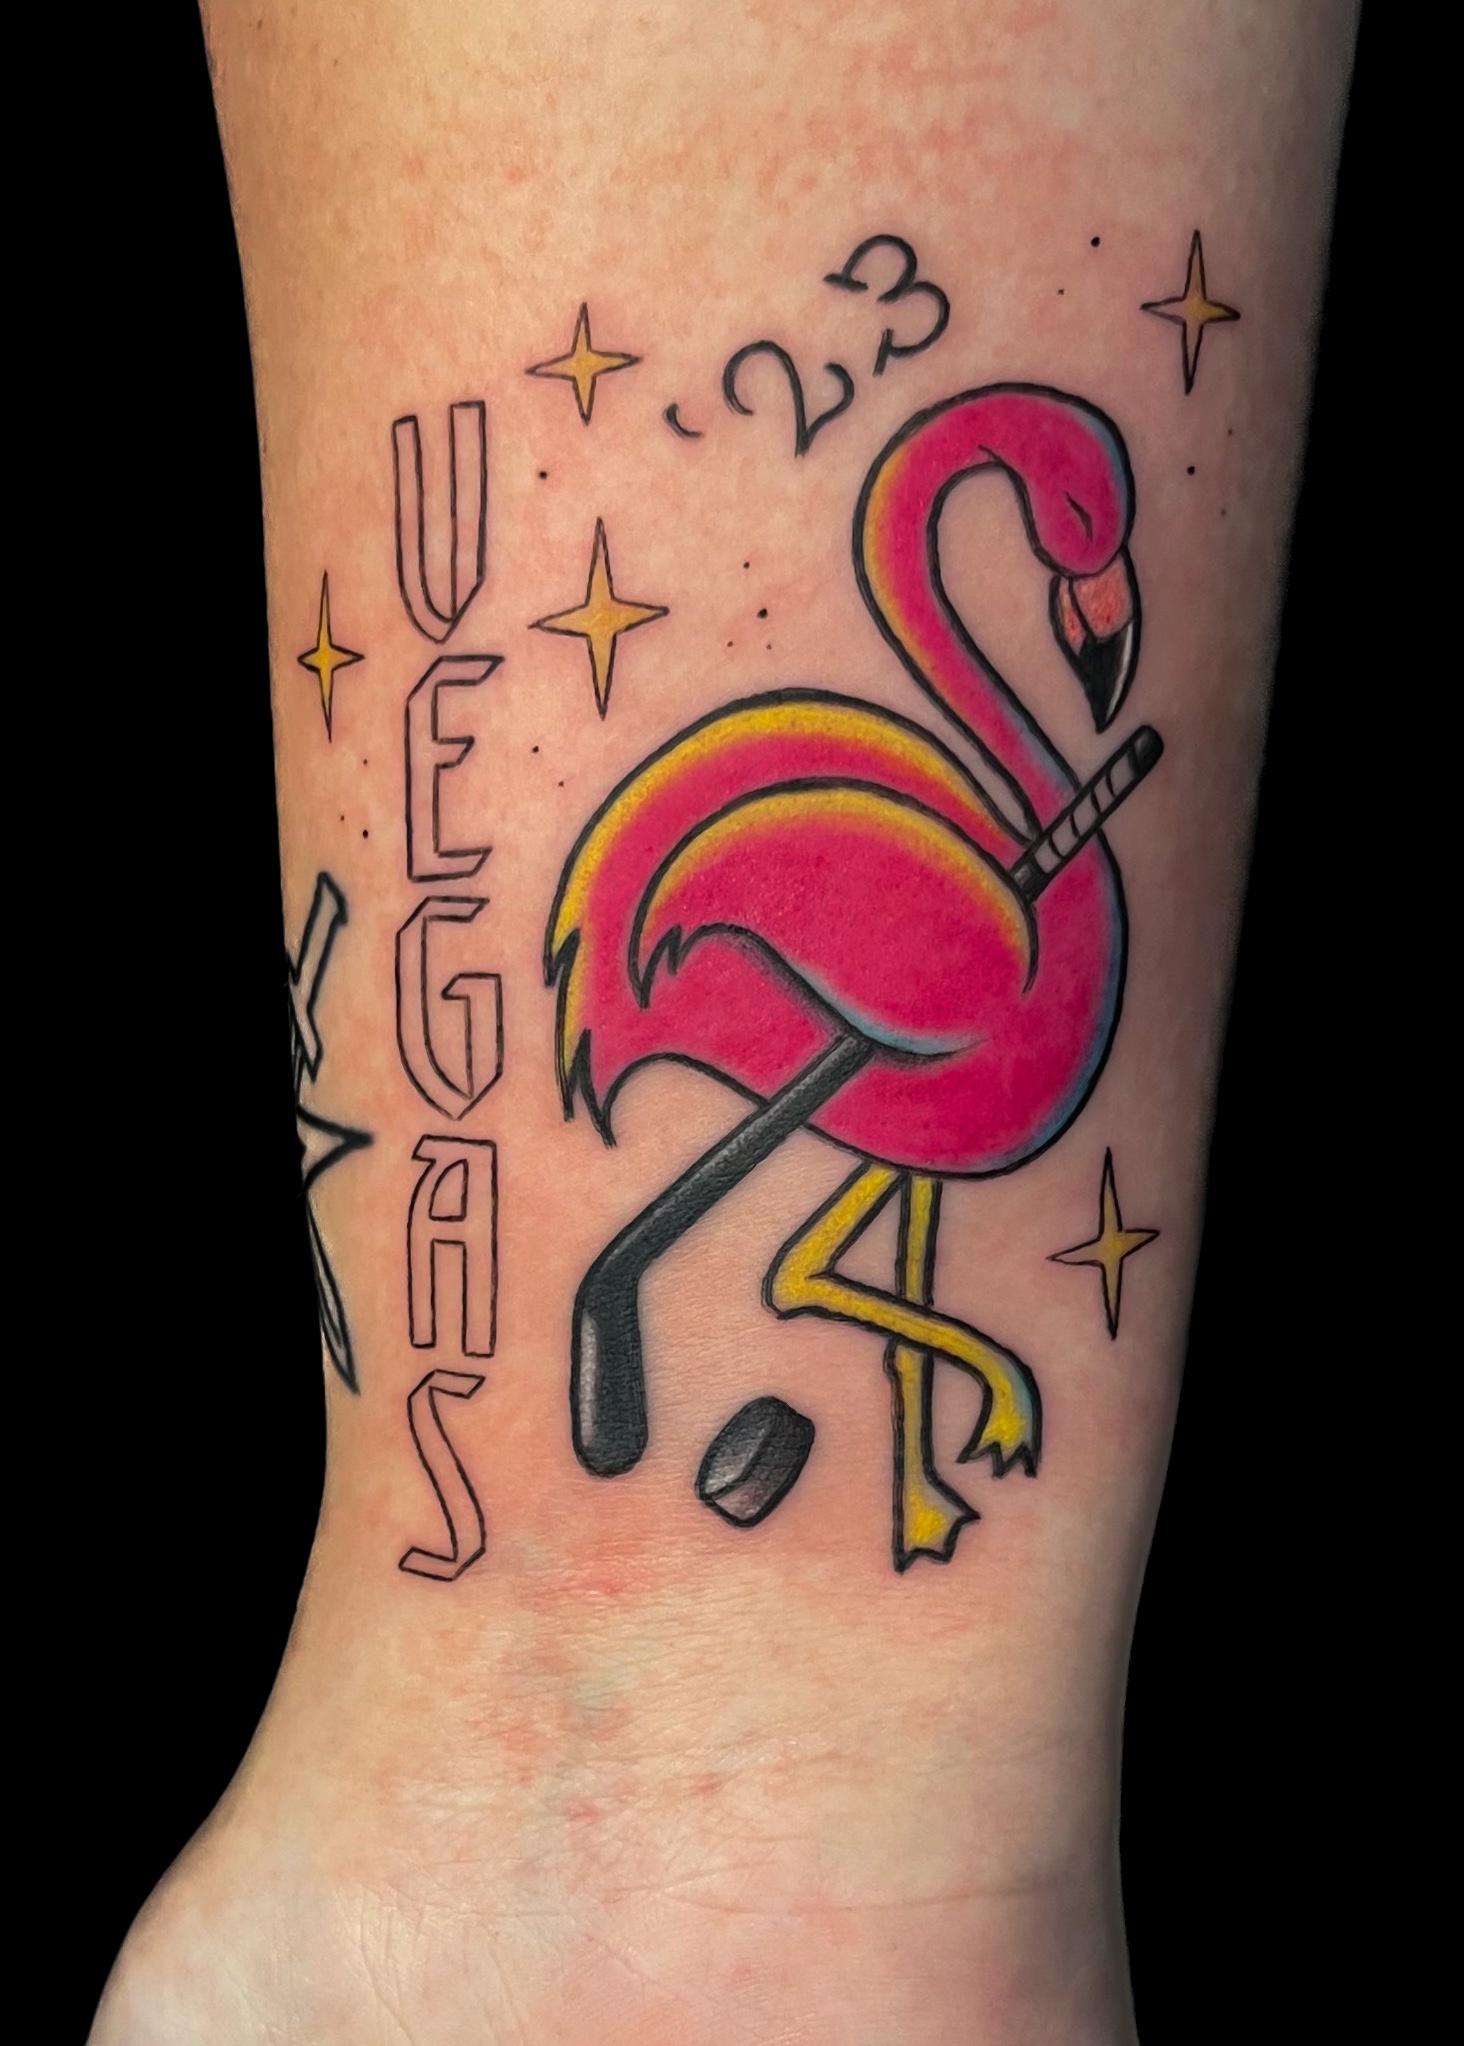 Vegas flamingo tattoo